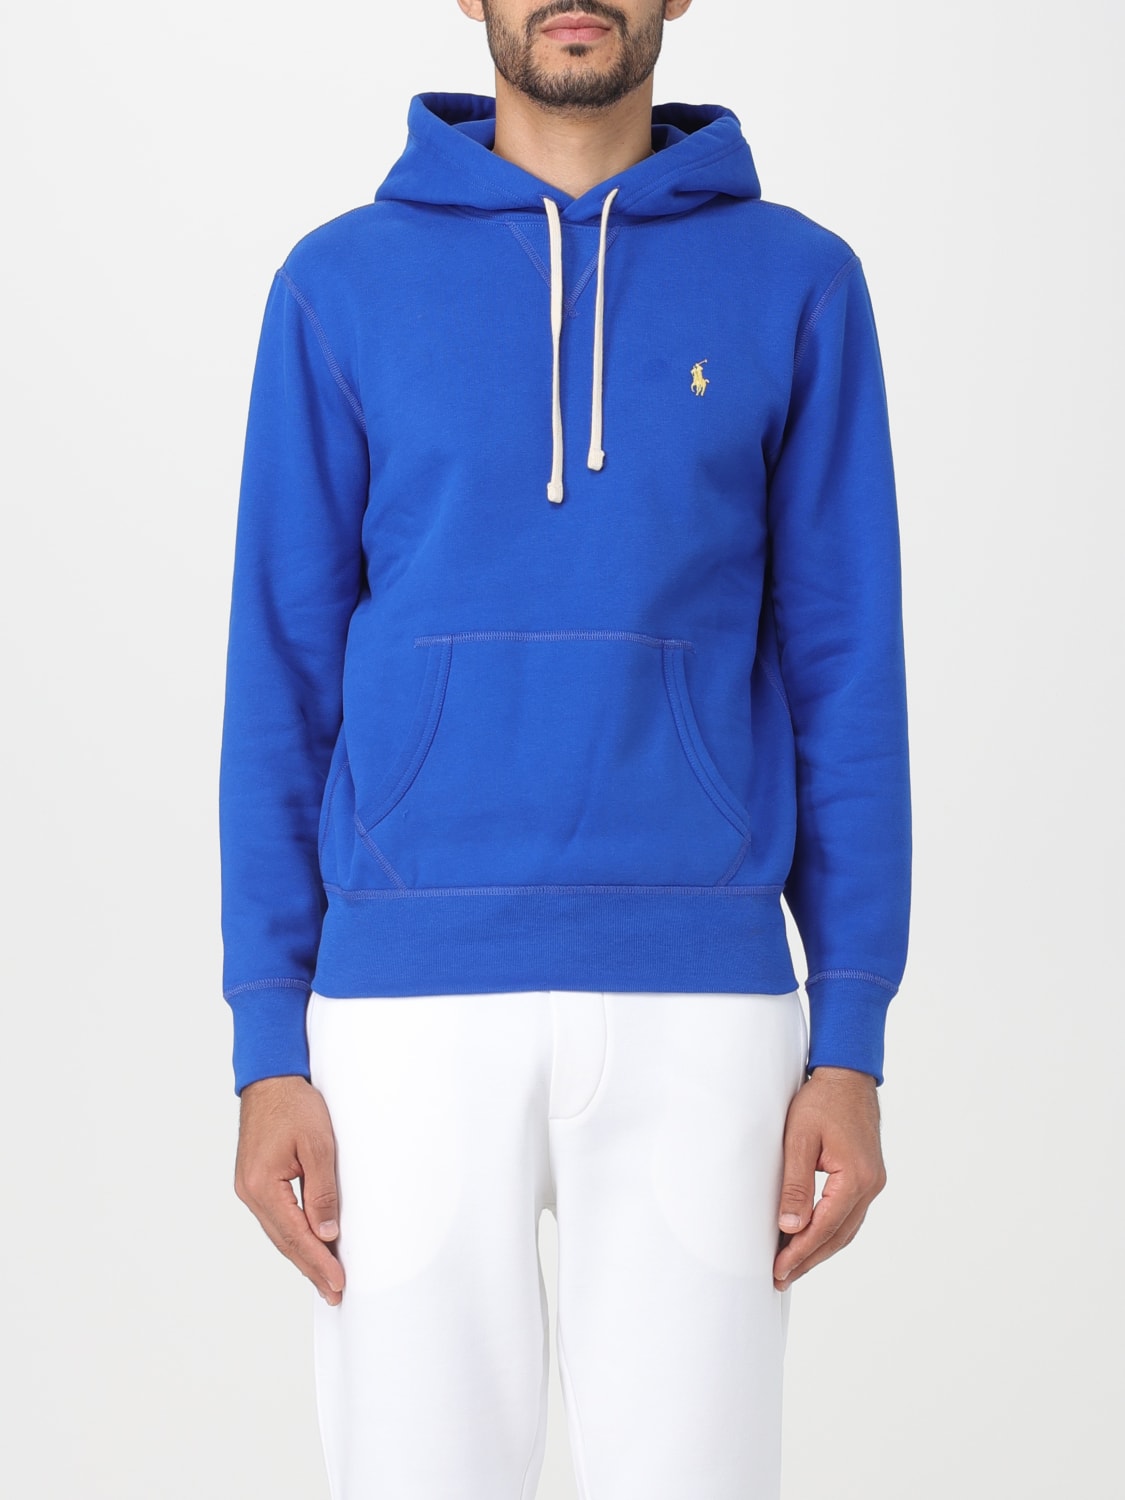 POLO RALPH LAUREN - Men's regular sweatshirt with hood and logo - Blue -  710888282002